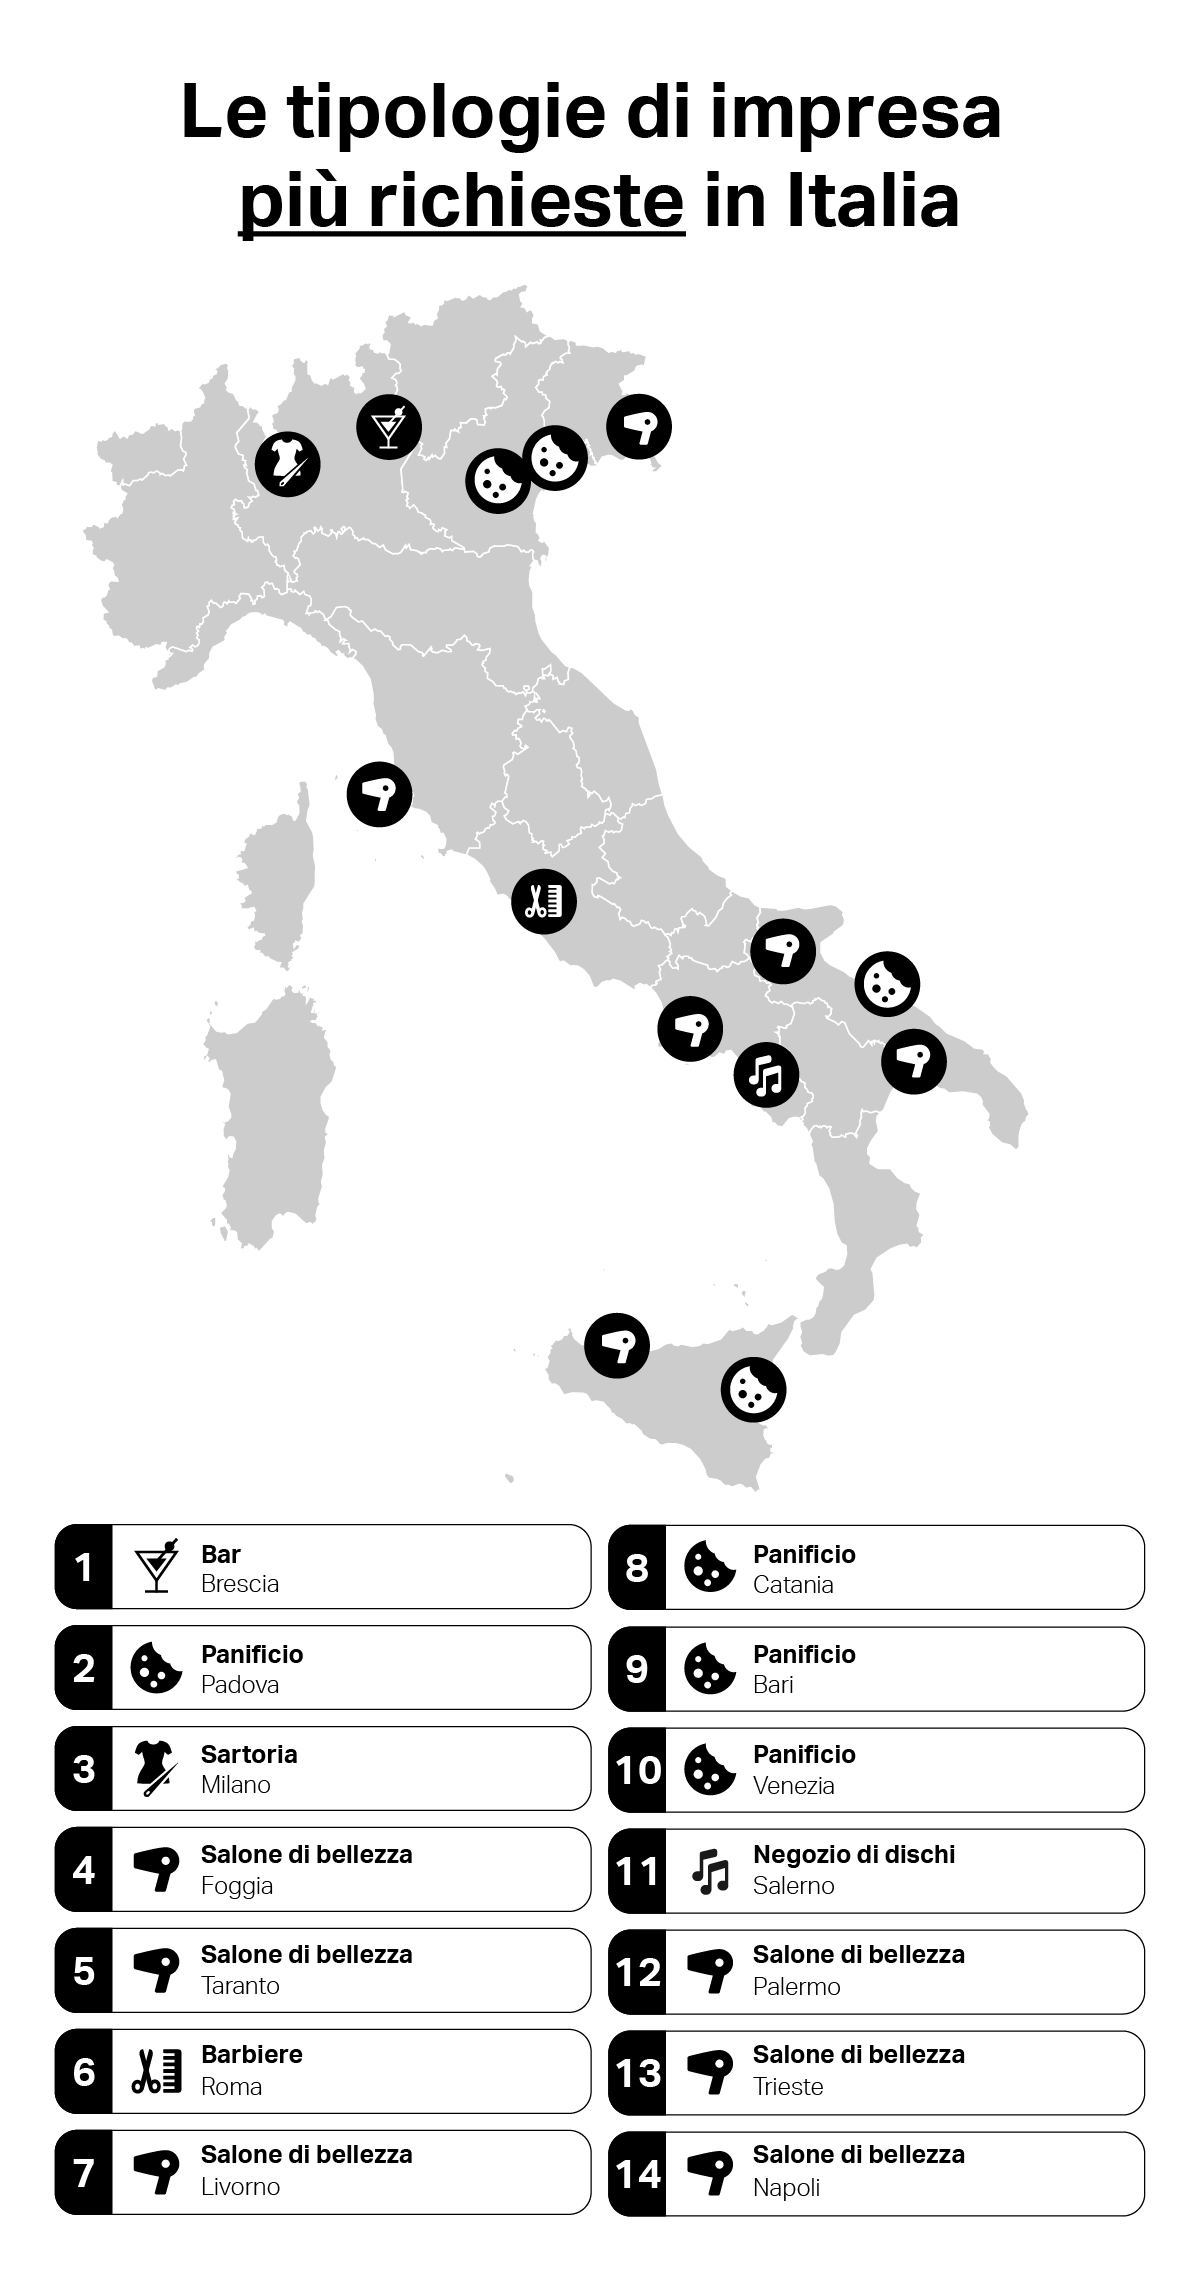 Quali sono le tipologie di impresa più richieste in Italia